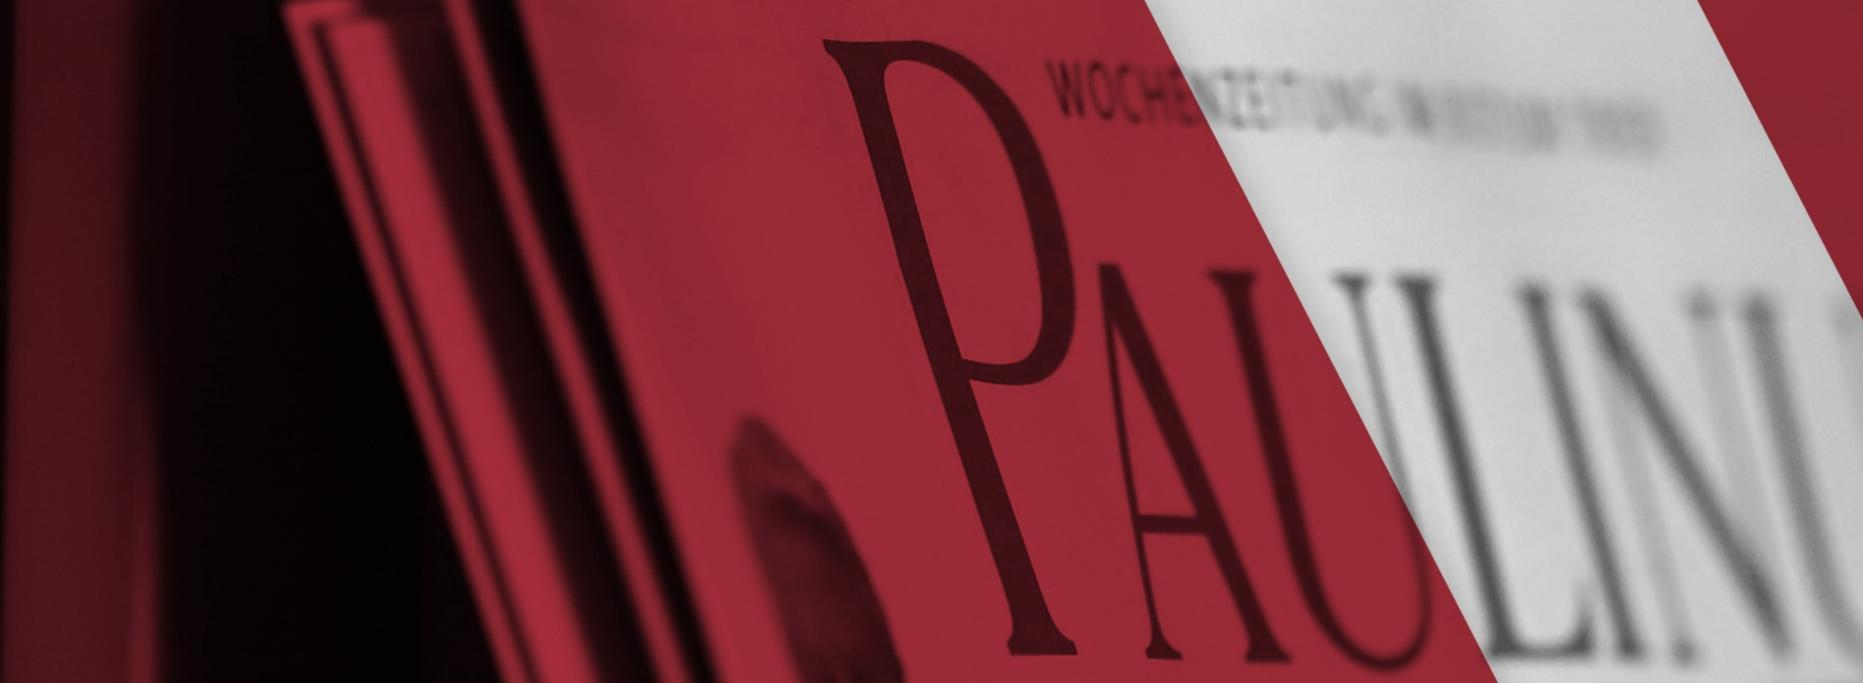 Man sieht ein Banner mit einem roten Hintergrund und mit Zeitungen. Darüber steht 'Weitere Nachrichten gibt es im gemeinsamen Newsportal von Paulinus und Bistum Trier.